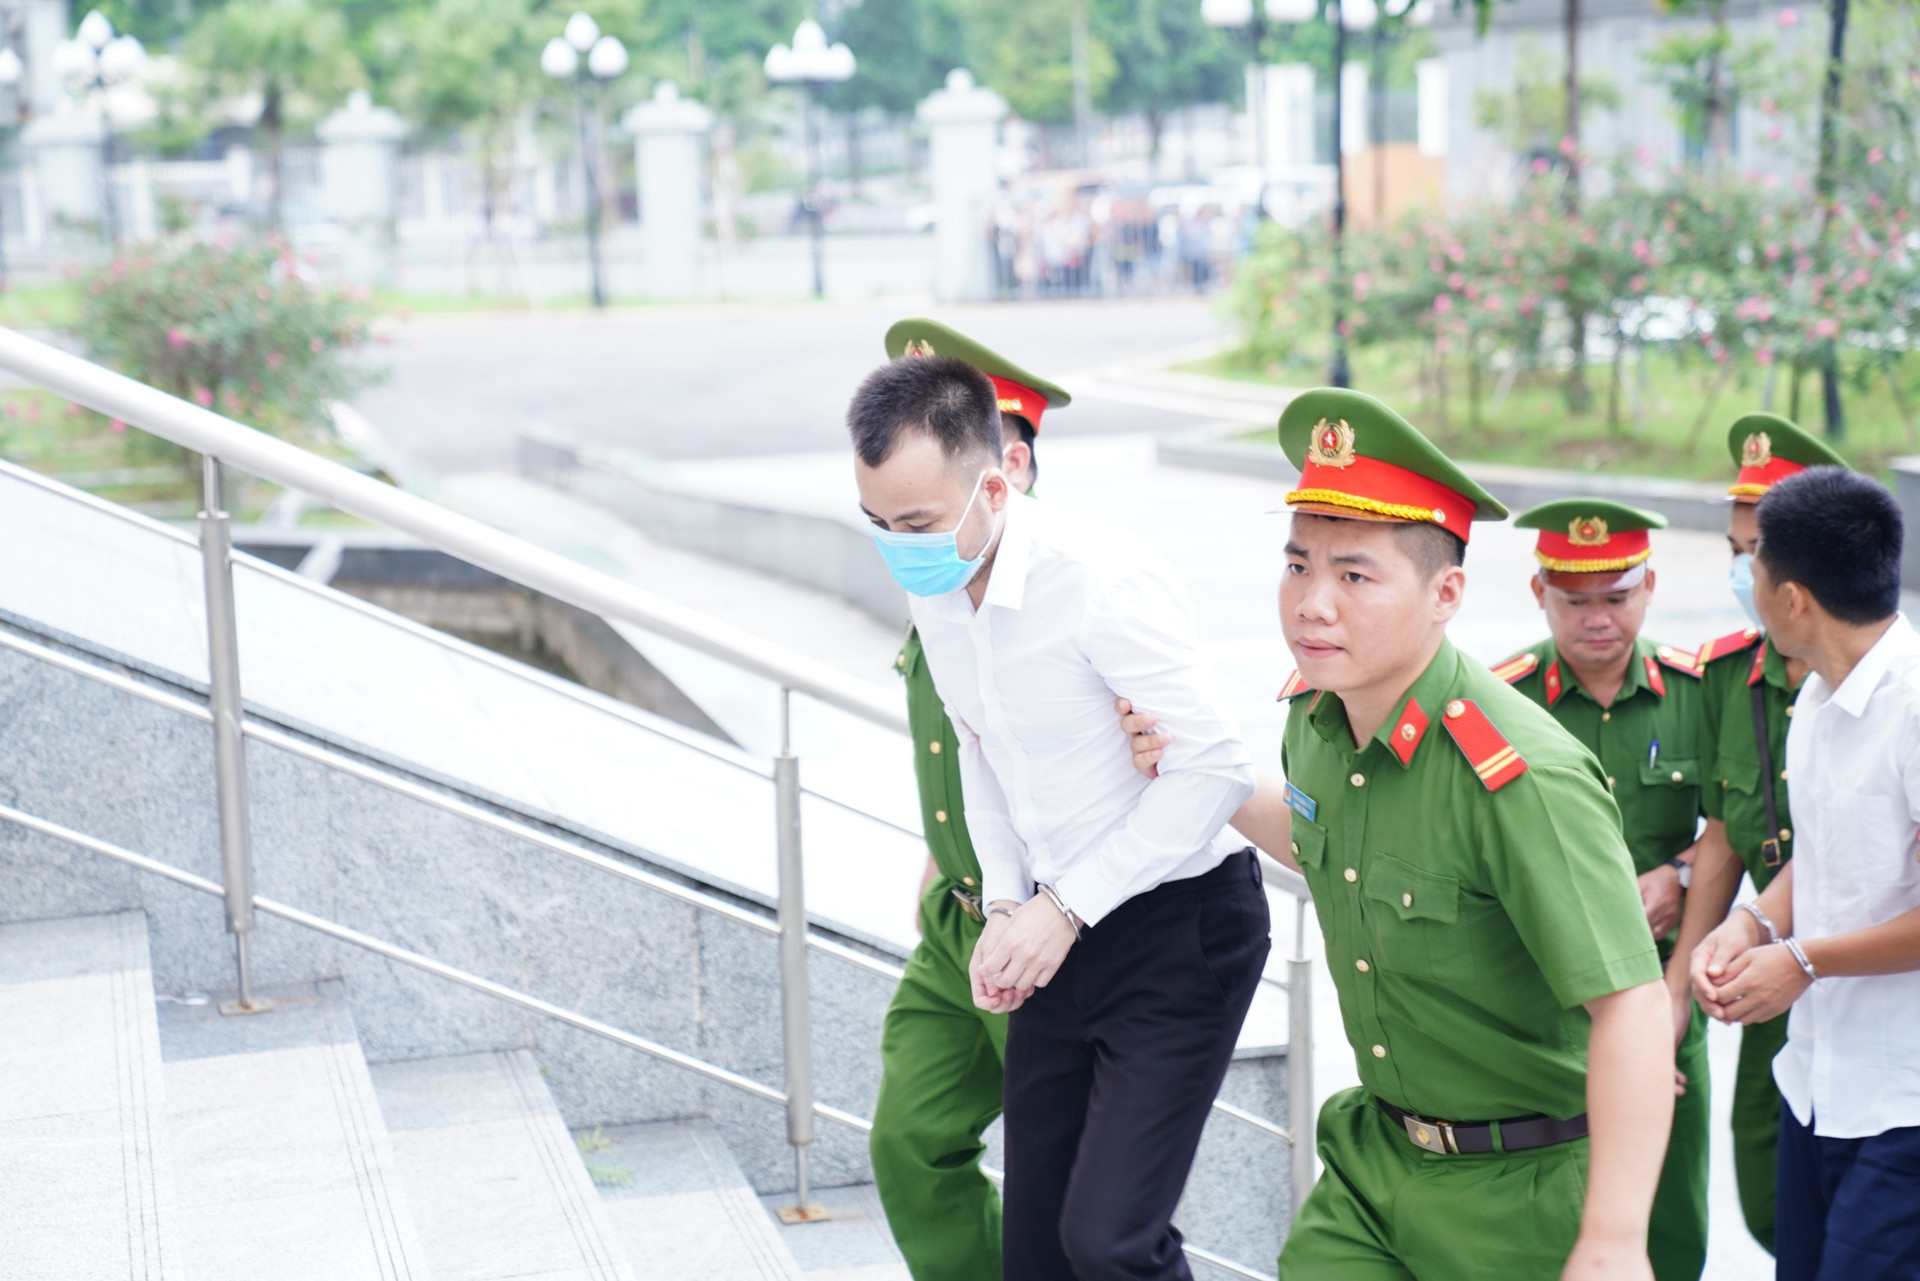 Đây là vụ án thứ 4 ông Chung bị xử lý hình sự. Cựu Chủ tịch UBND TP Hà Nội này đang thụ án 12 năm tù trong các vụ án chiếm đoạt tài liệu mật liên quan vụ án Nhật Cường; mua sắm chế phẩm Redoxy-3C; vụ án Nhật Cường.